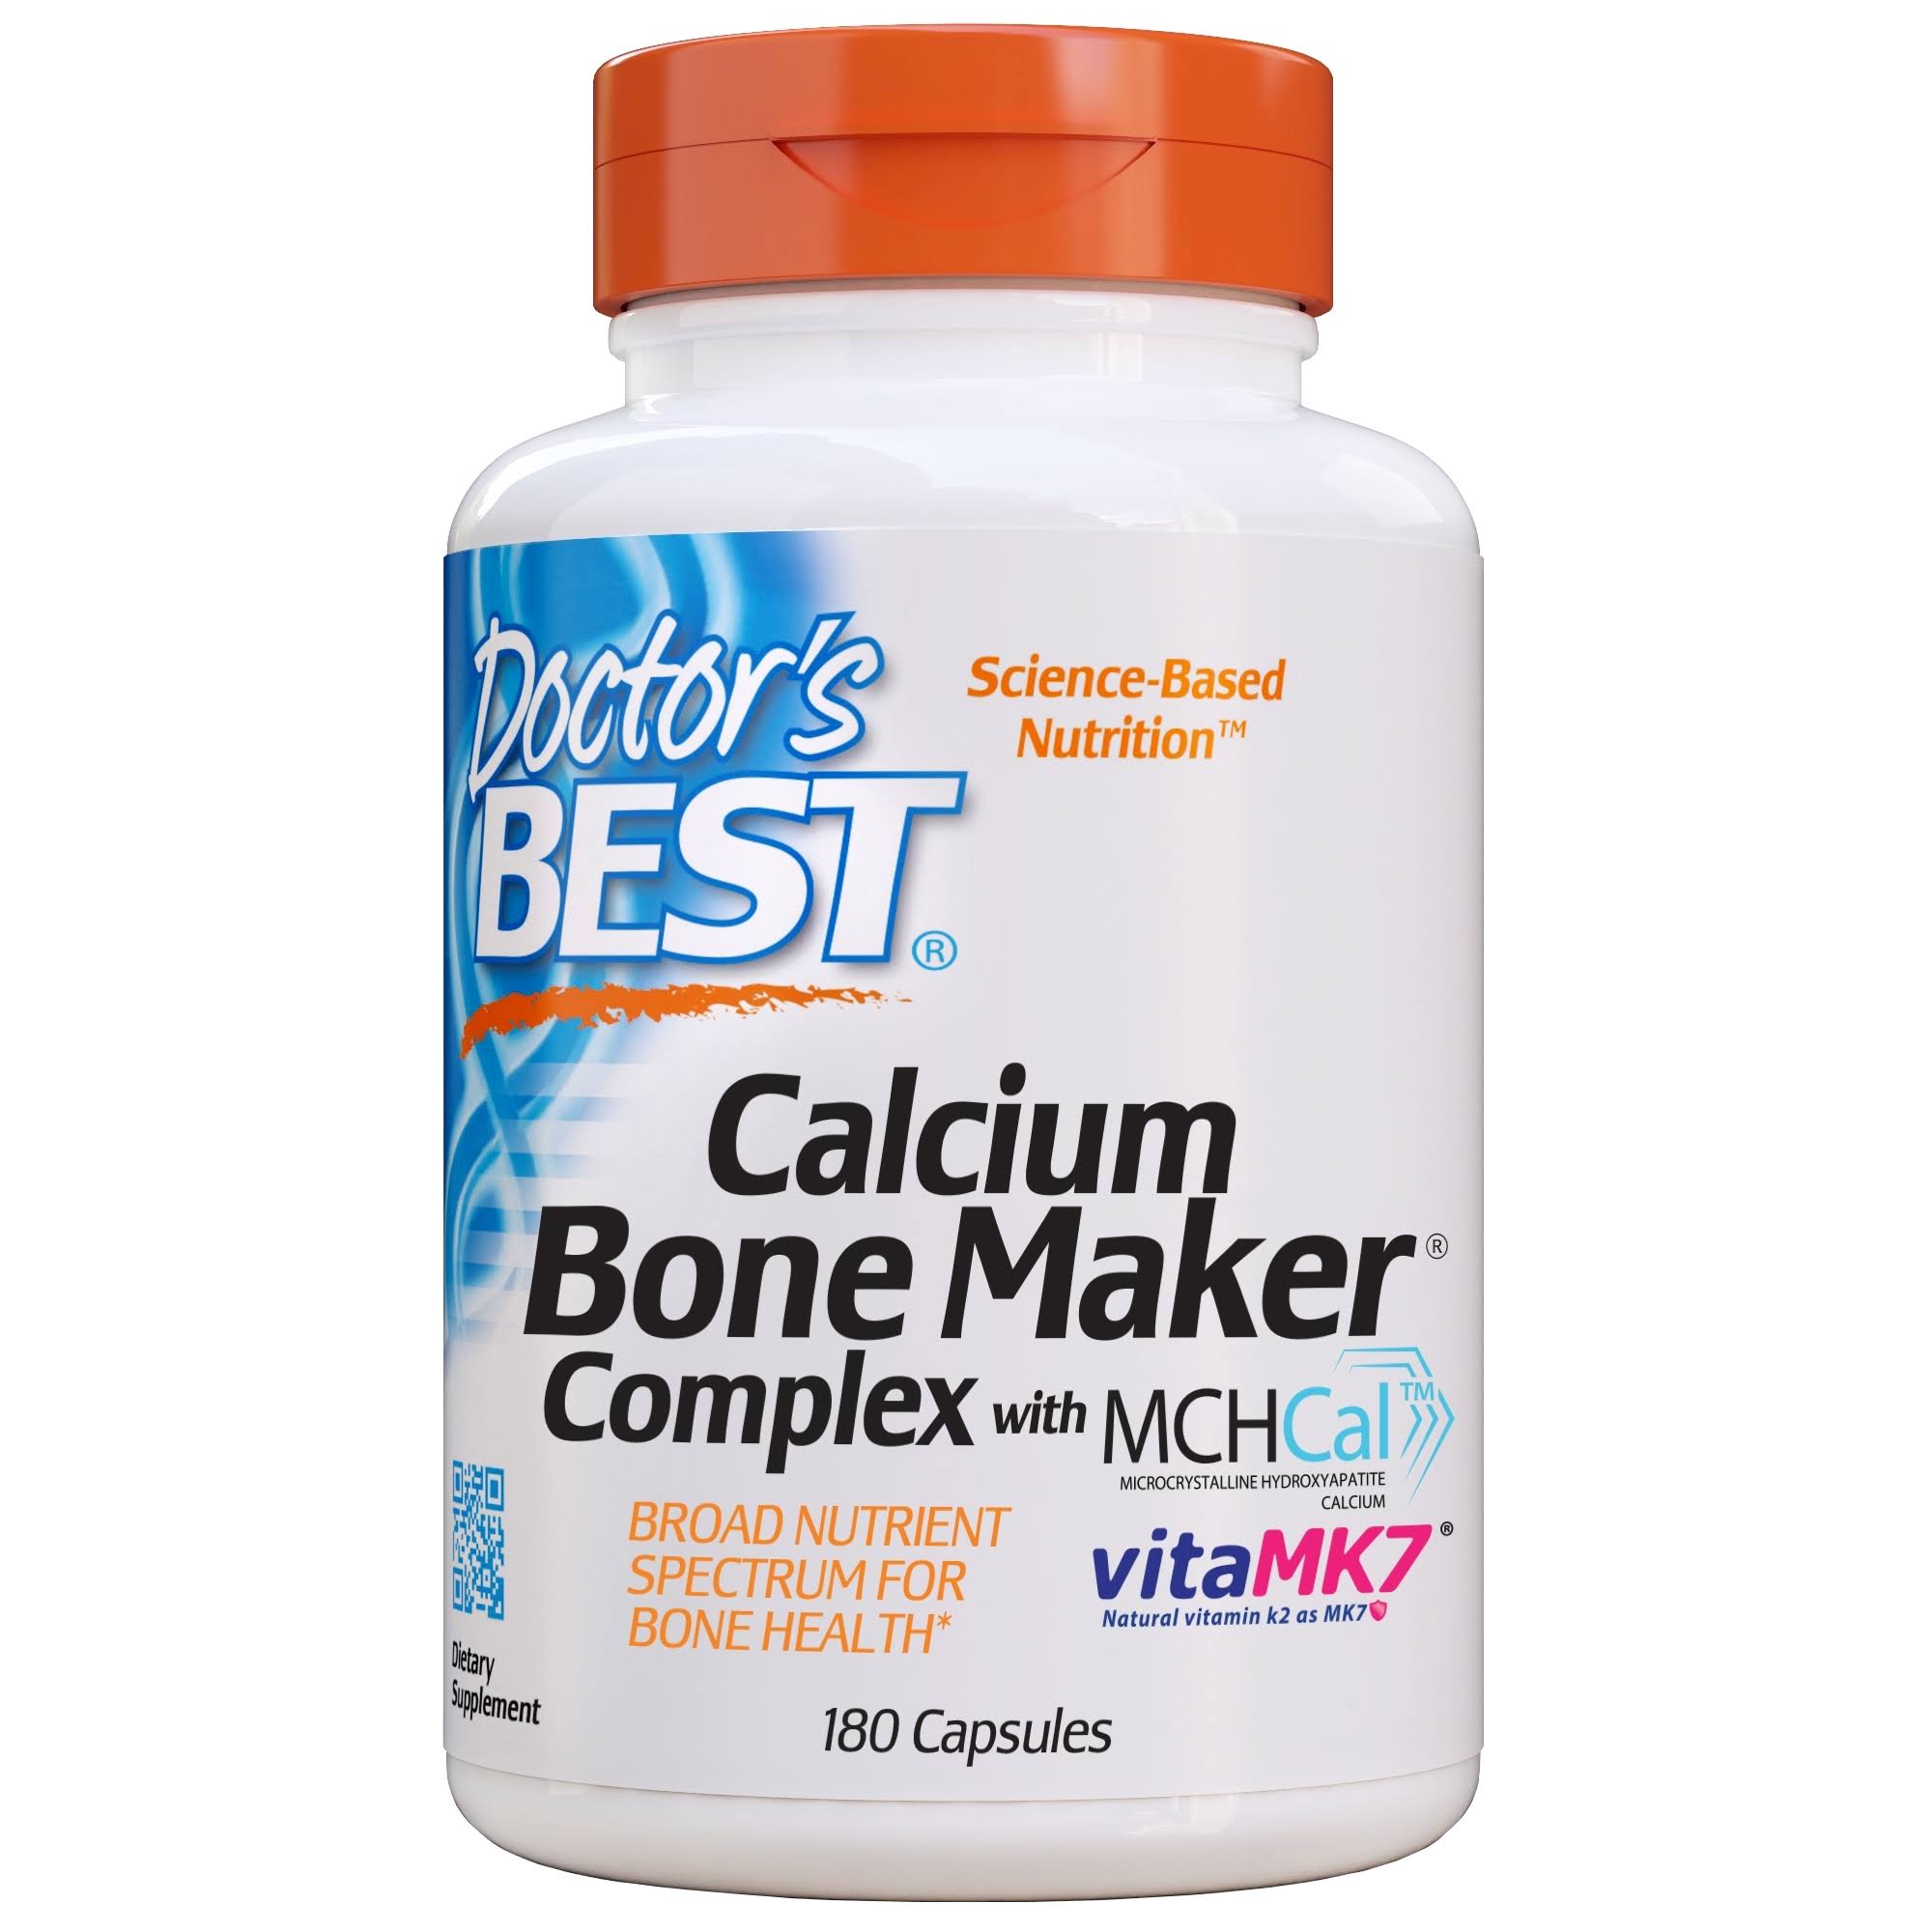 Doctor's Best Calcium Bone Maker Complex Supplement - 180 Capsules